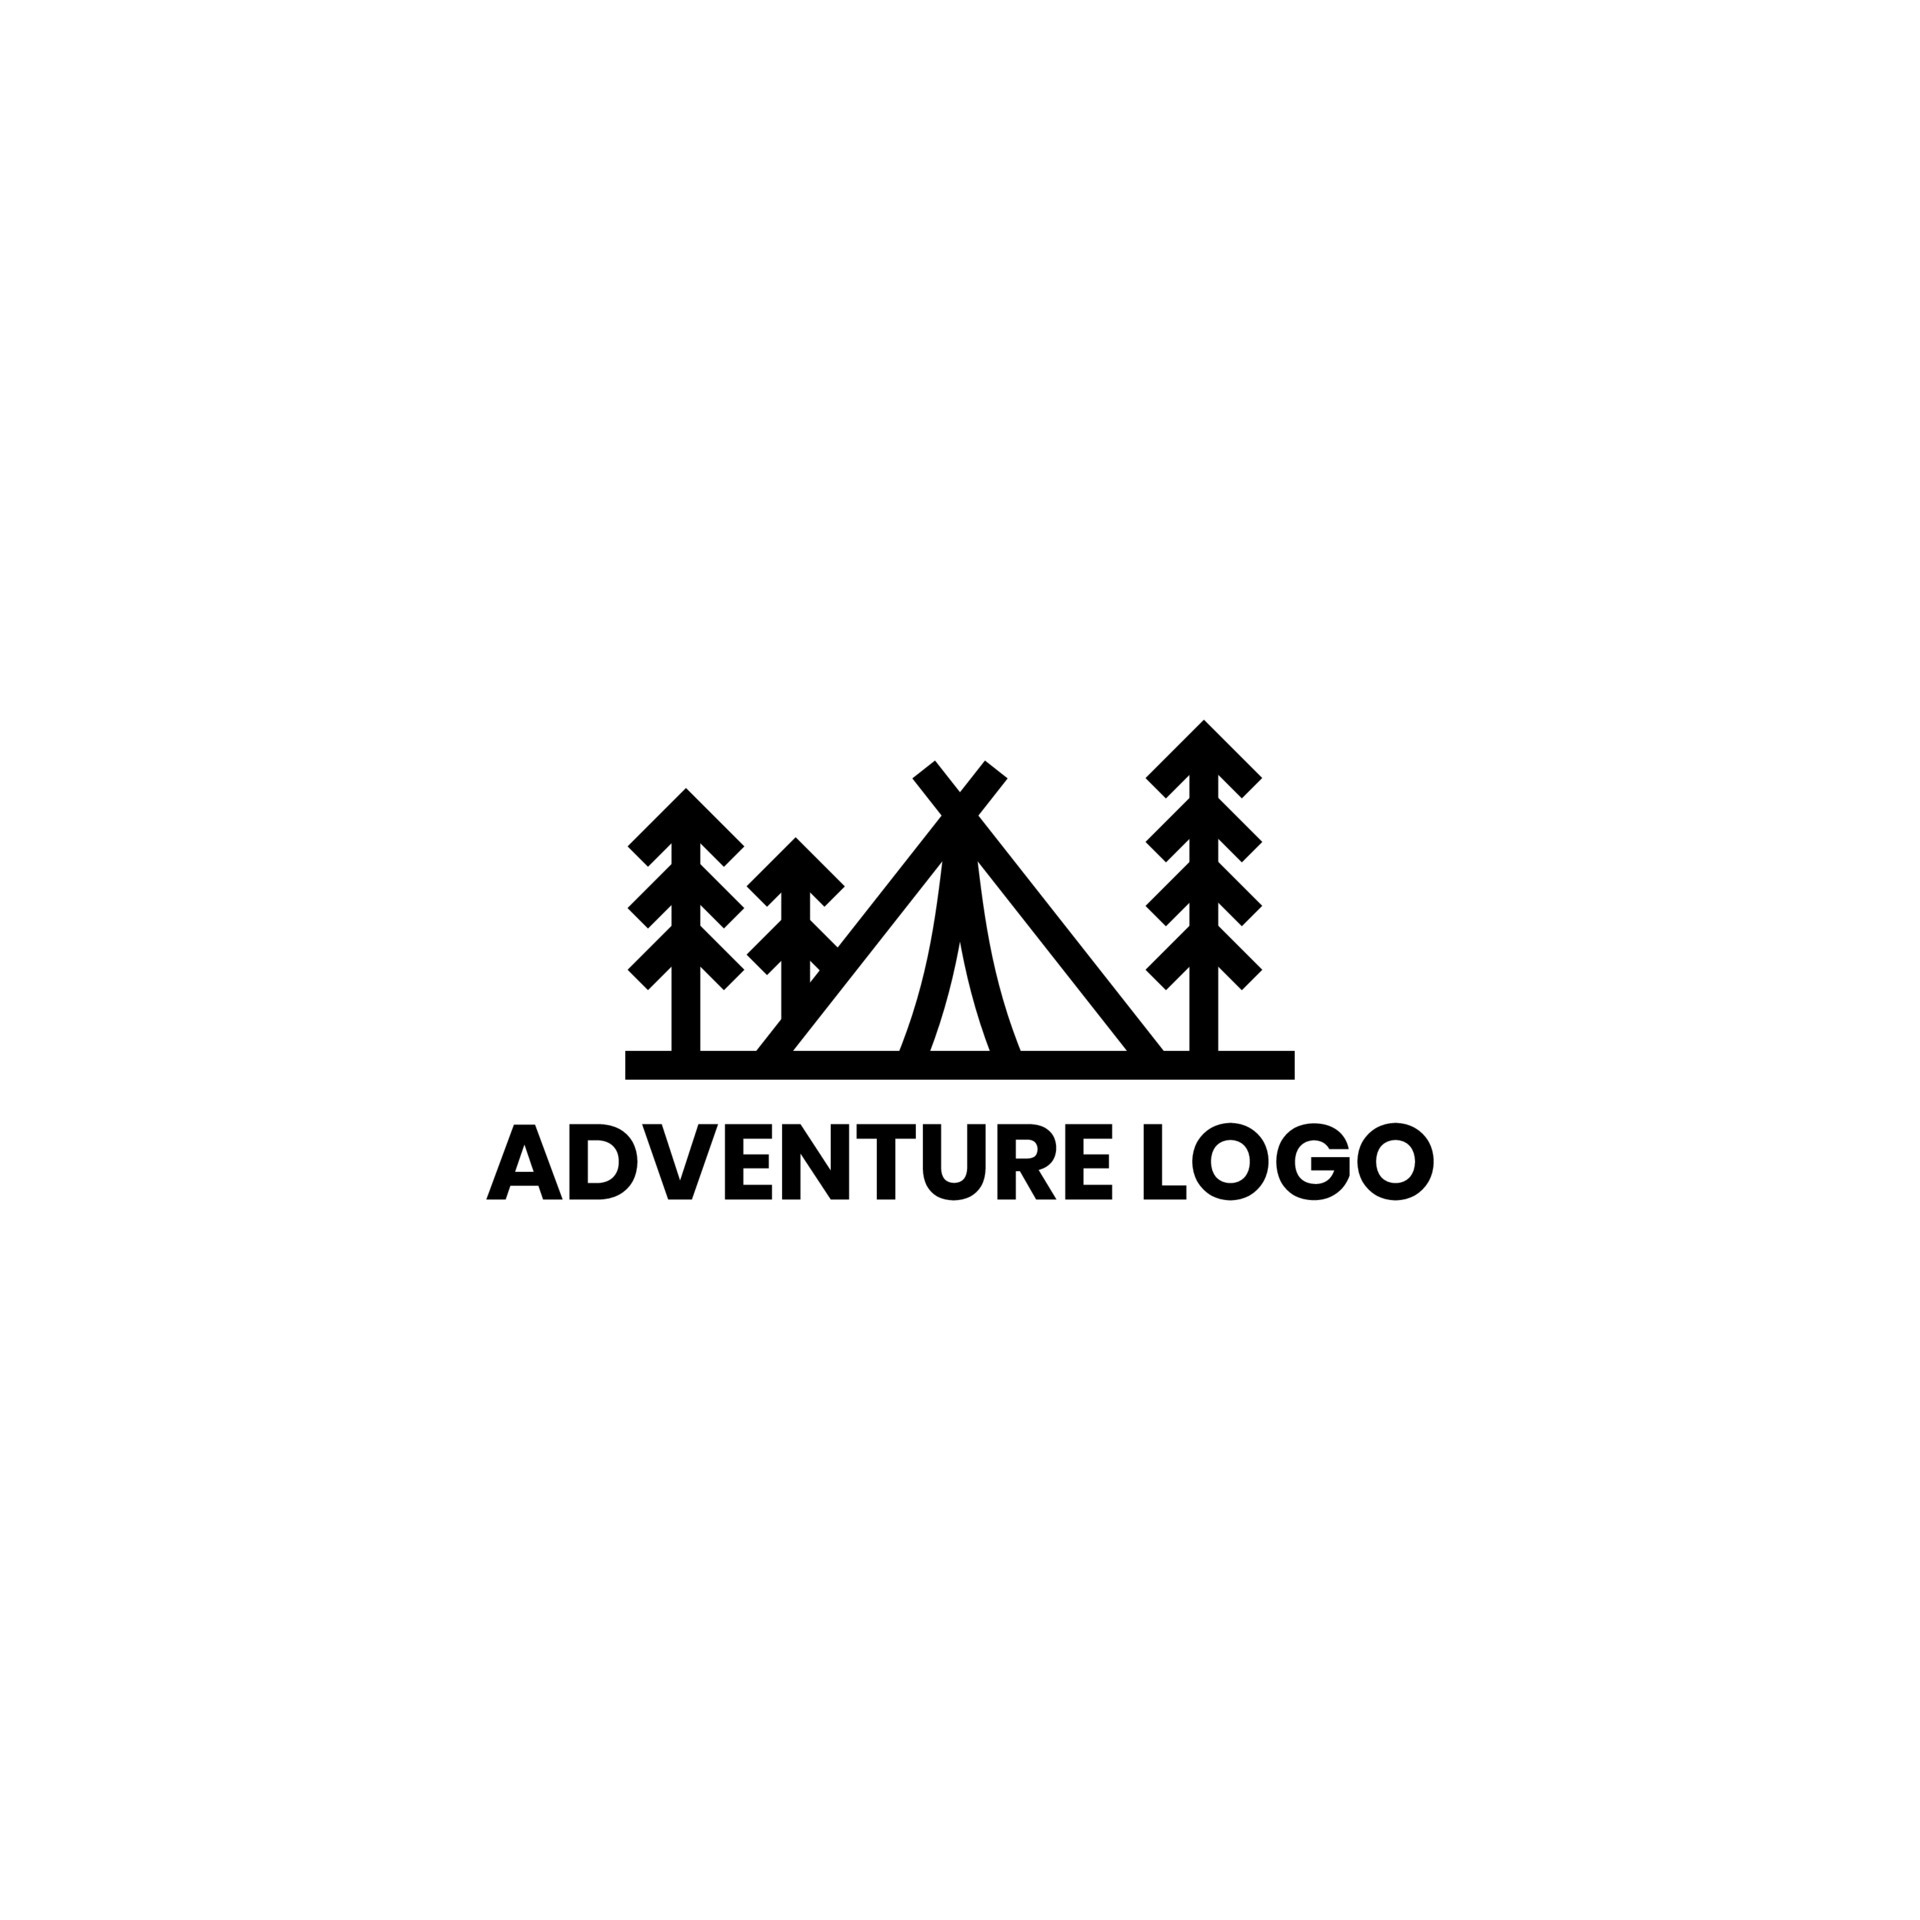 Adventure badge logo design vector 5940592 Vector Art at Vecteezy